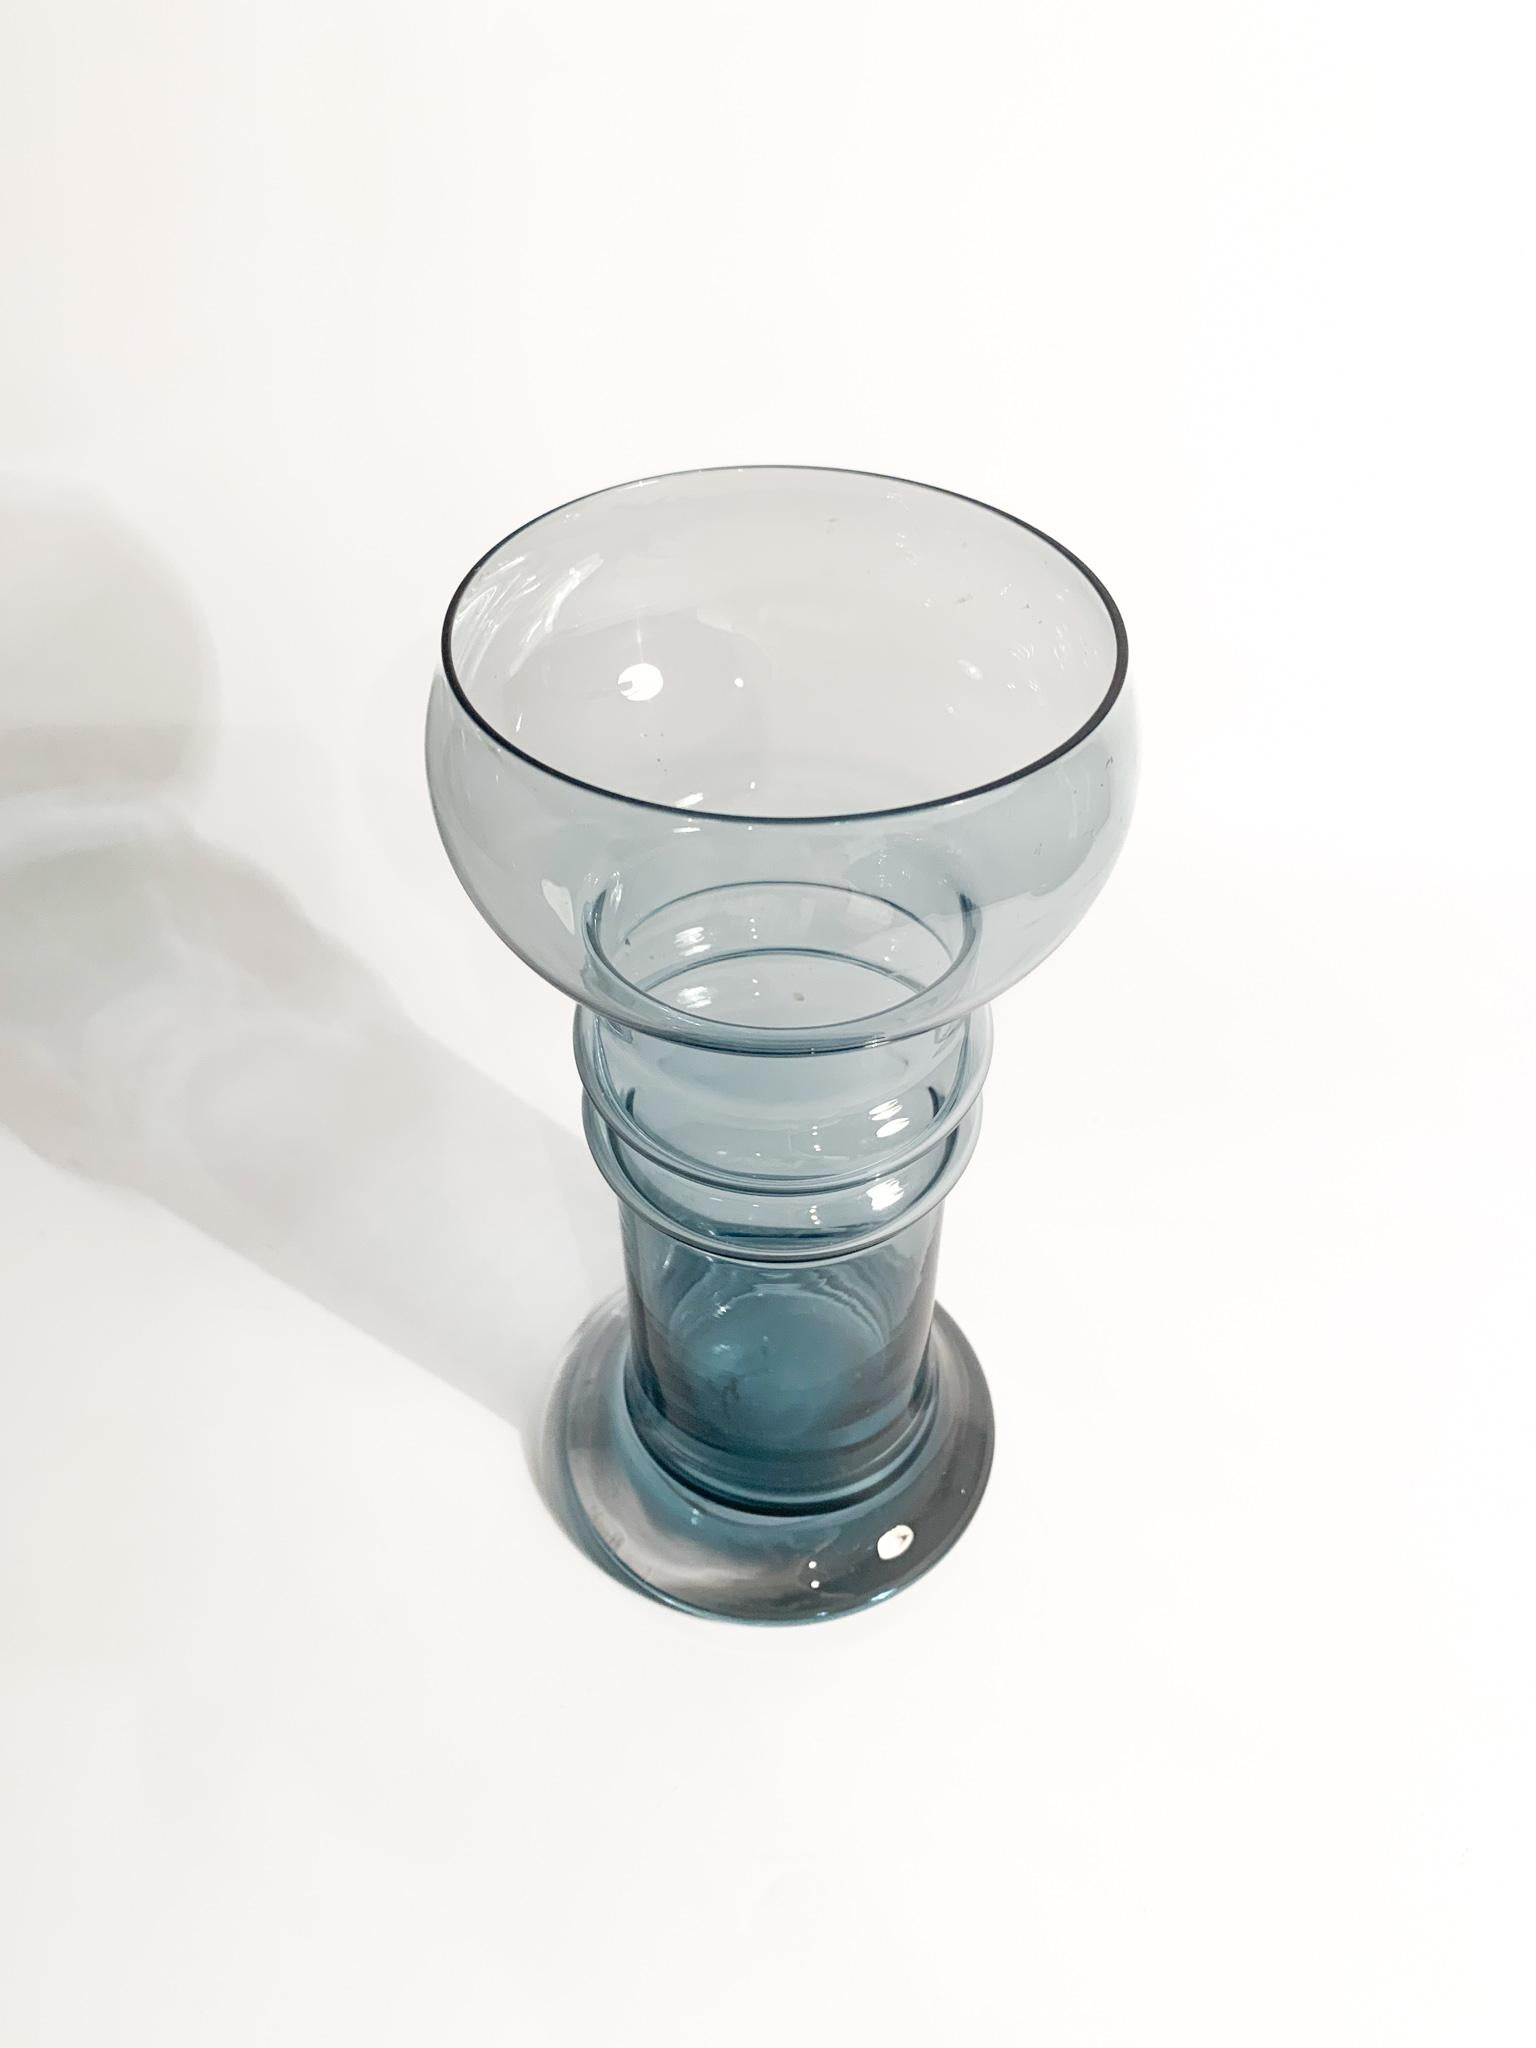 'Kielo' Vase in Finnish Glass Designed by Tamara Aladin for Riihimäki 1960s For Sale 1